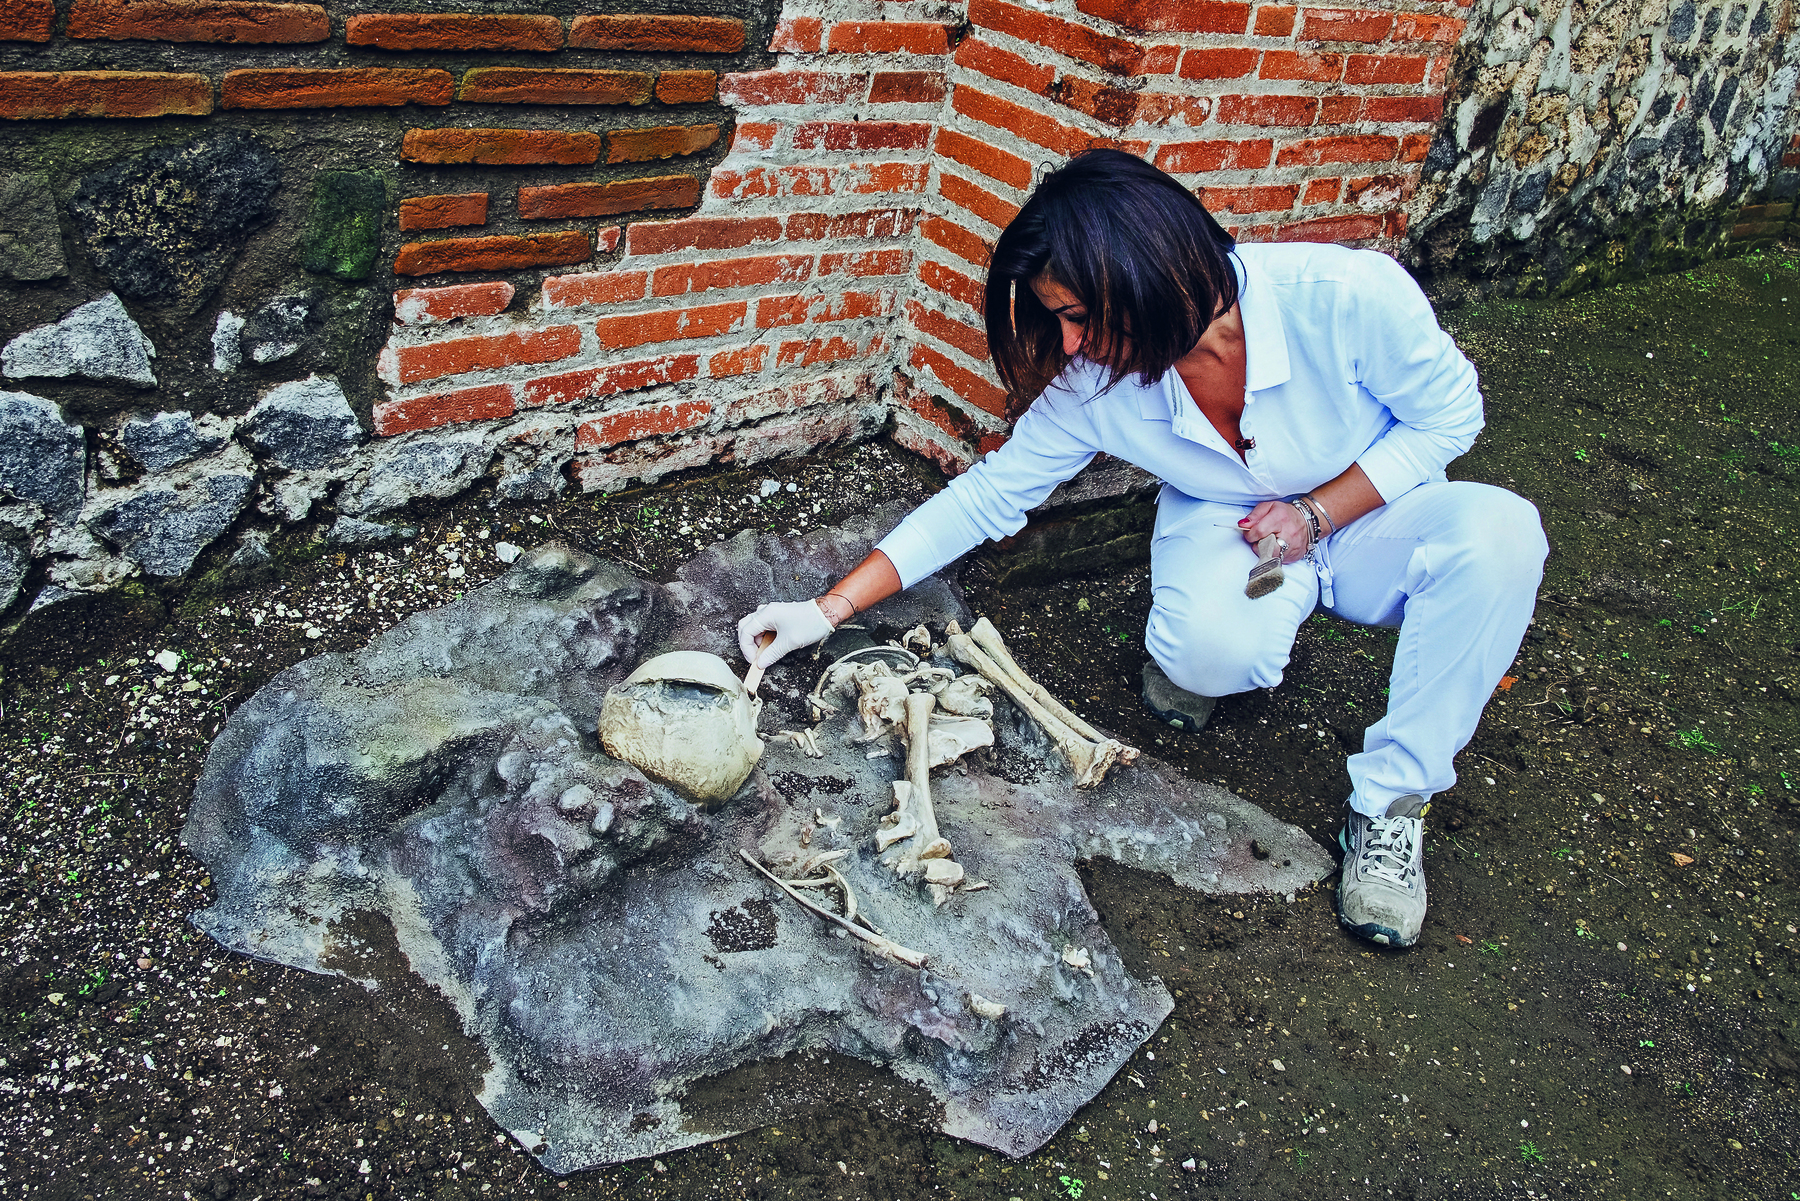 Fotografia. Mulher de roupas brancas usando luva cirúrgica analisa crânio e ossos humanos dispostos no chão de terra escura com paredes ao fundo.